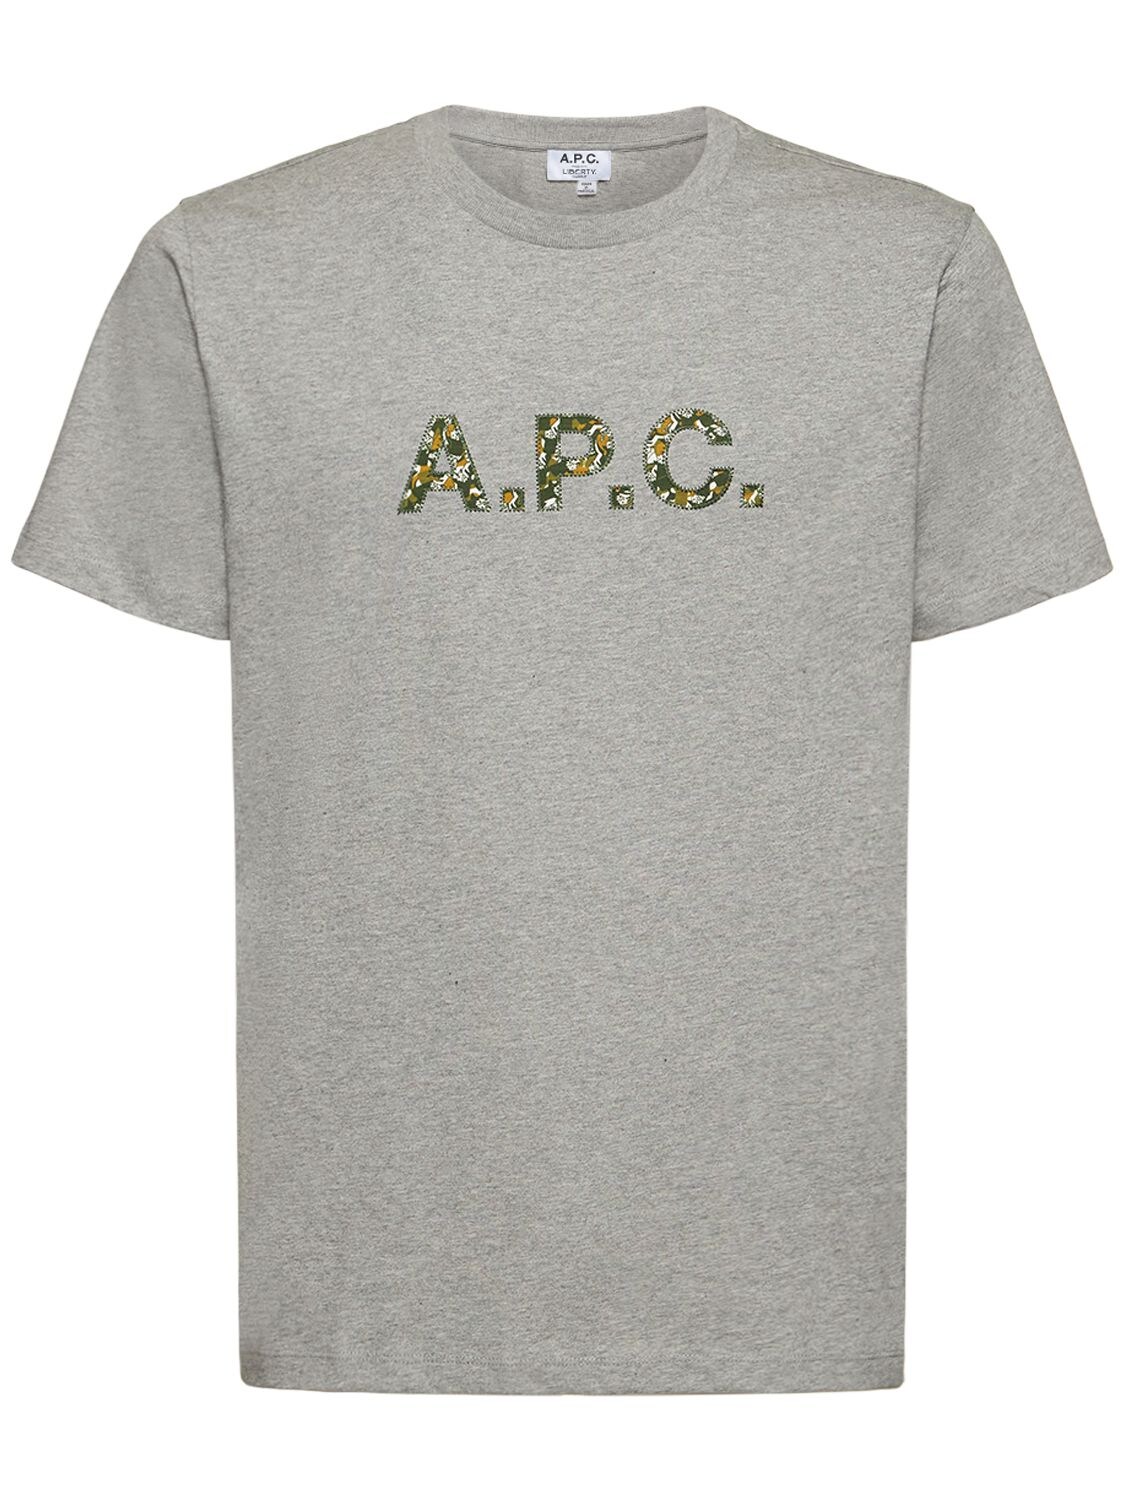 A.p.c. X Liberty Organic Cotton T-shirt – MEN > CLOTHING > T-SHIRTS